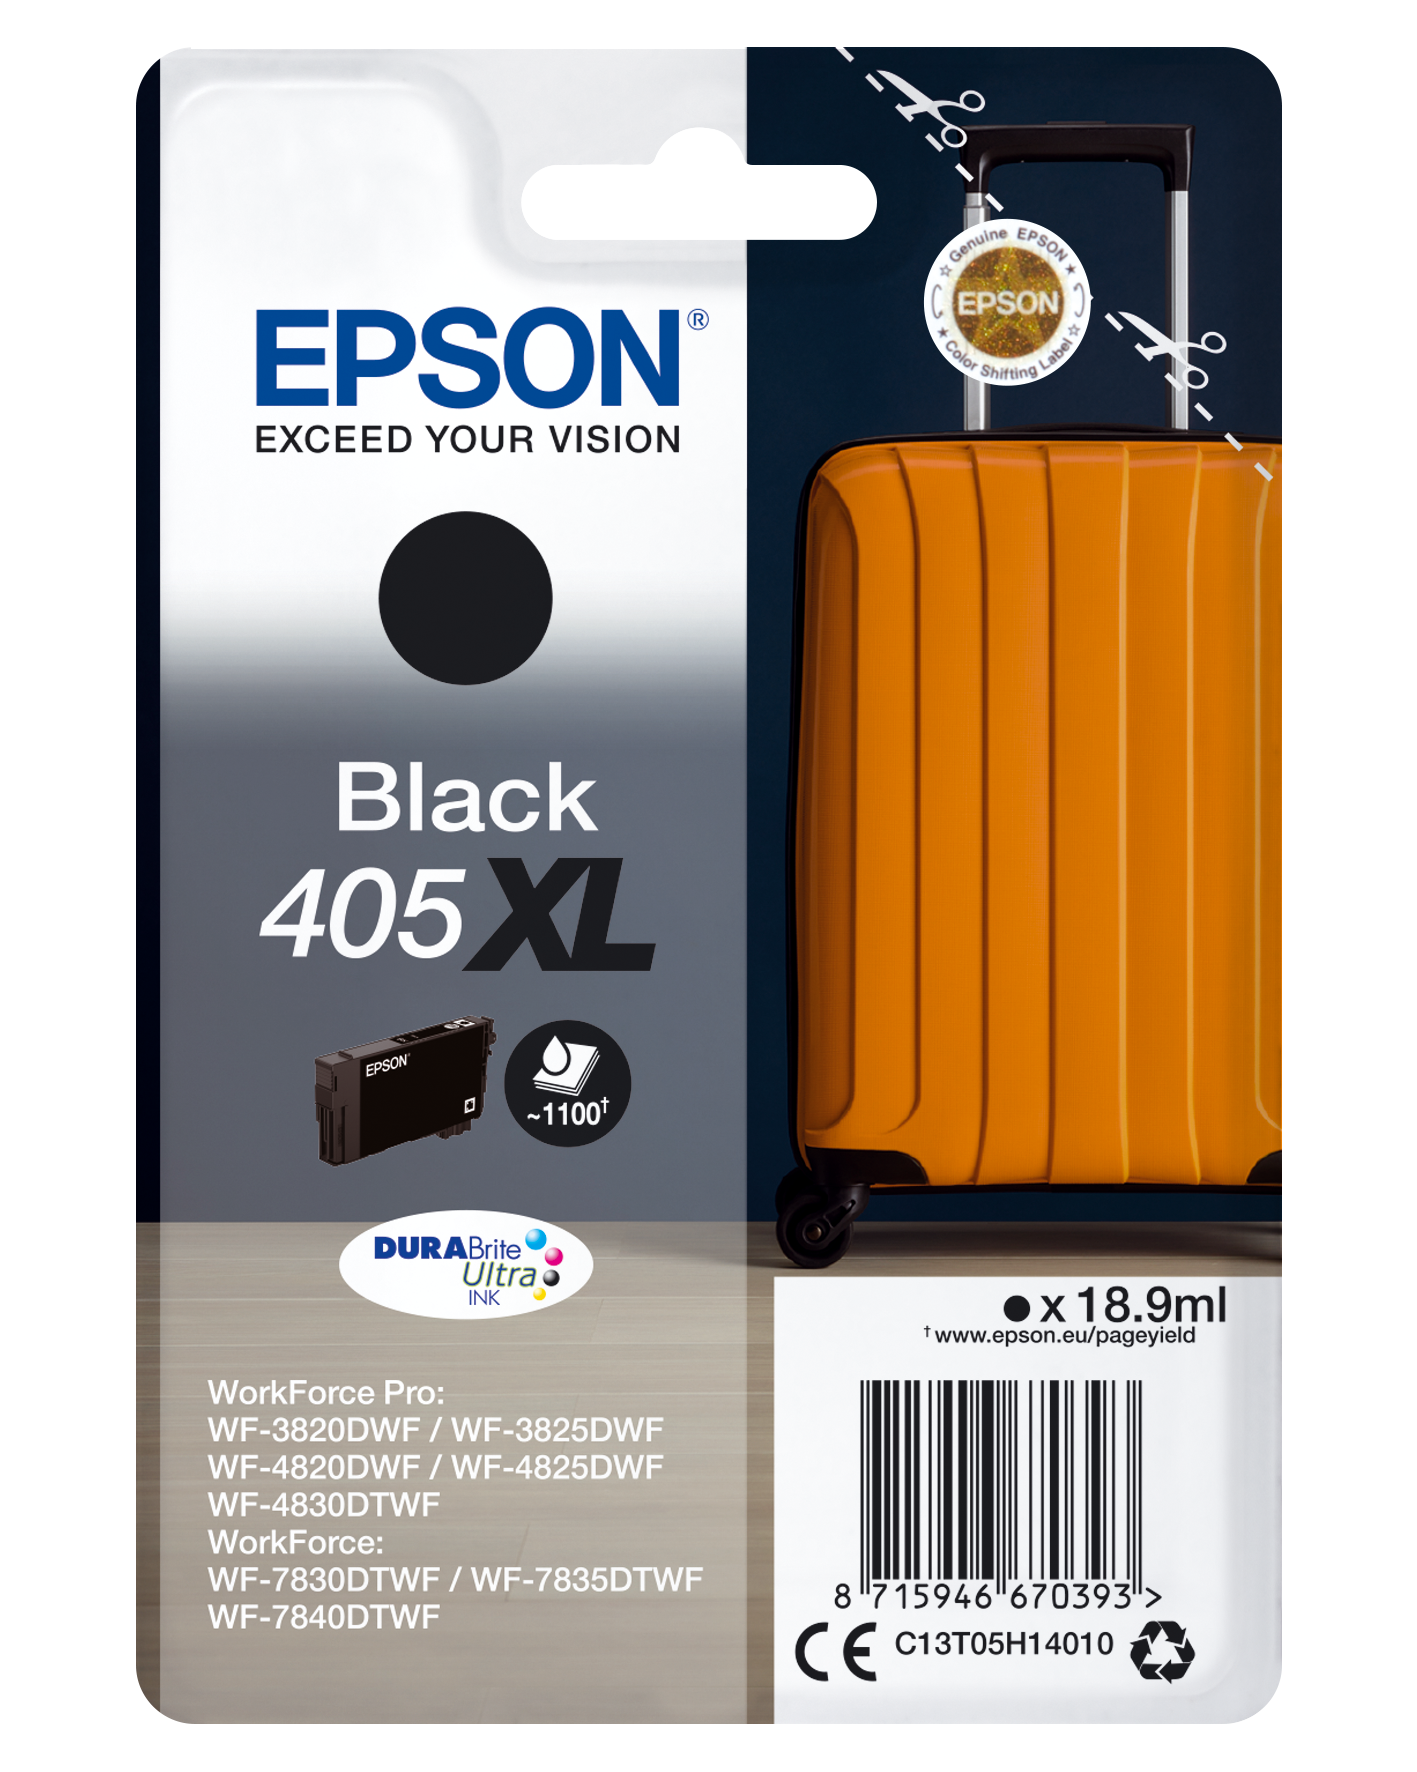 Cartouches de nettoyage Epson 603 - paquet de 4